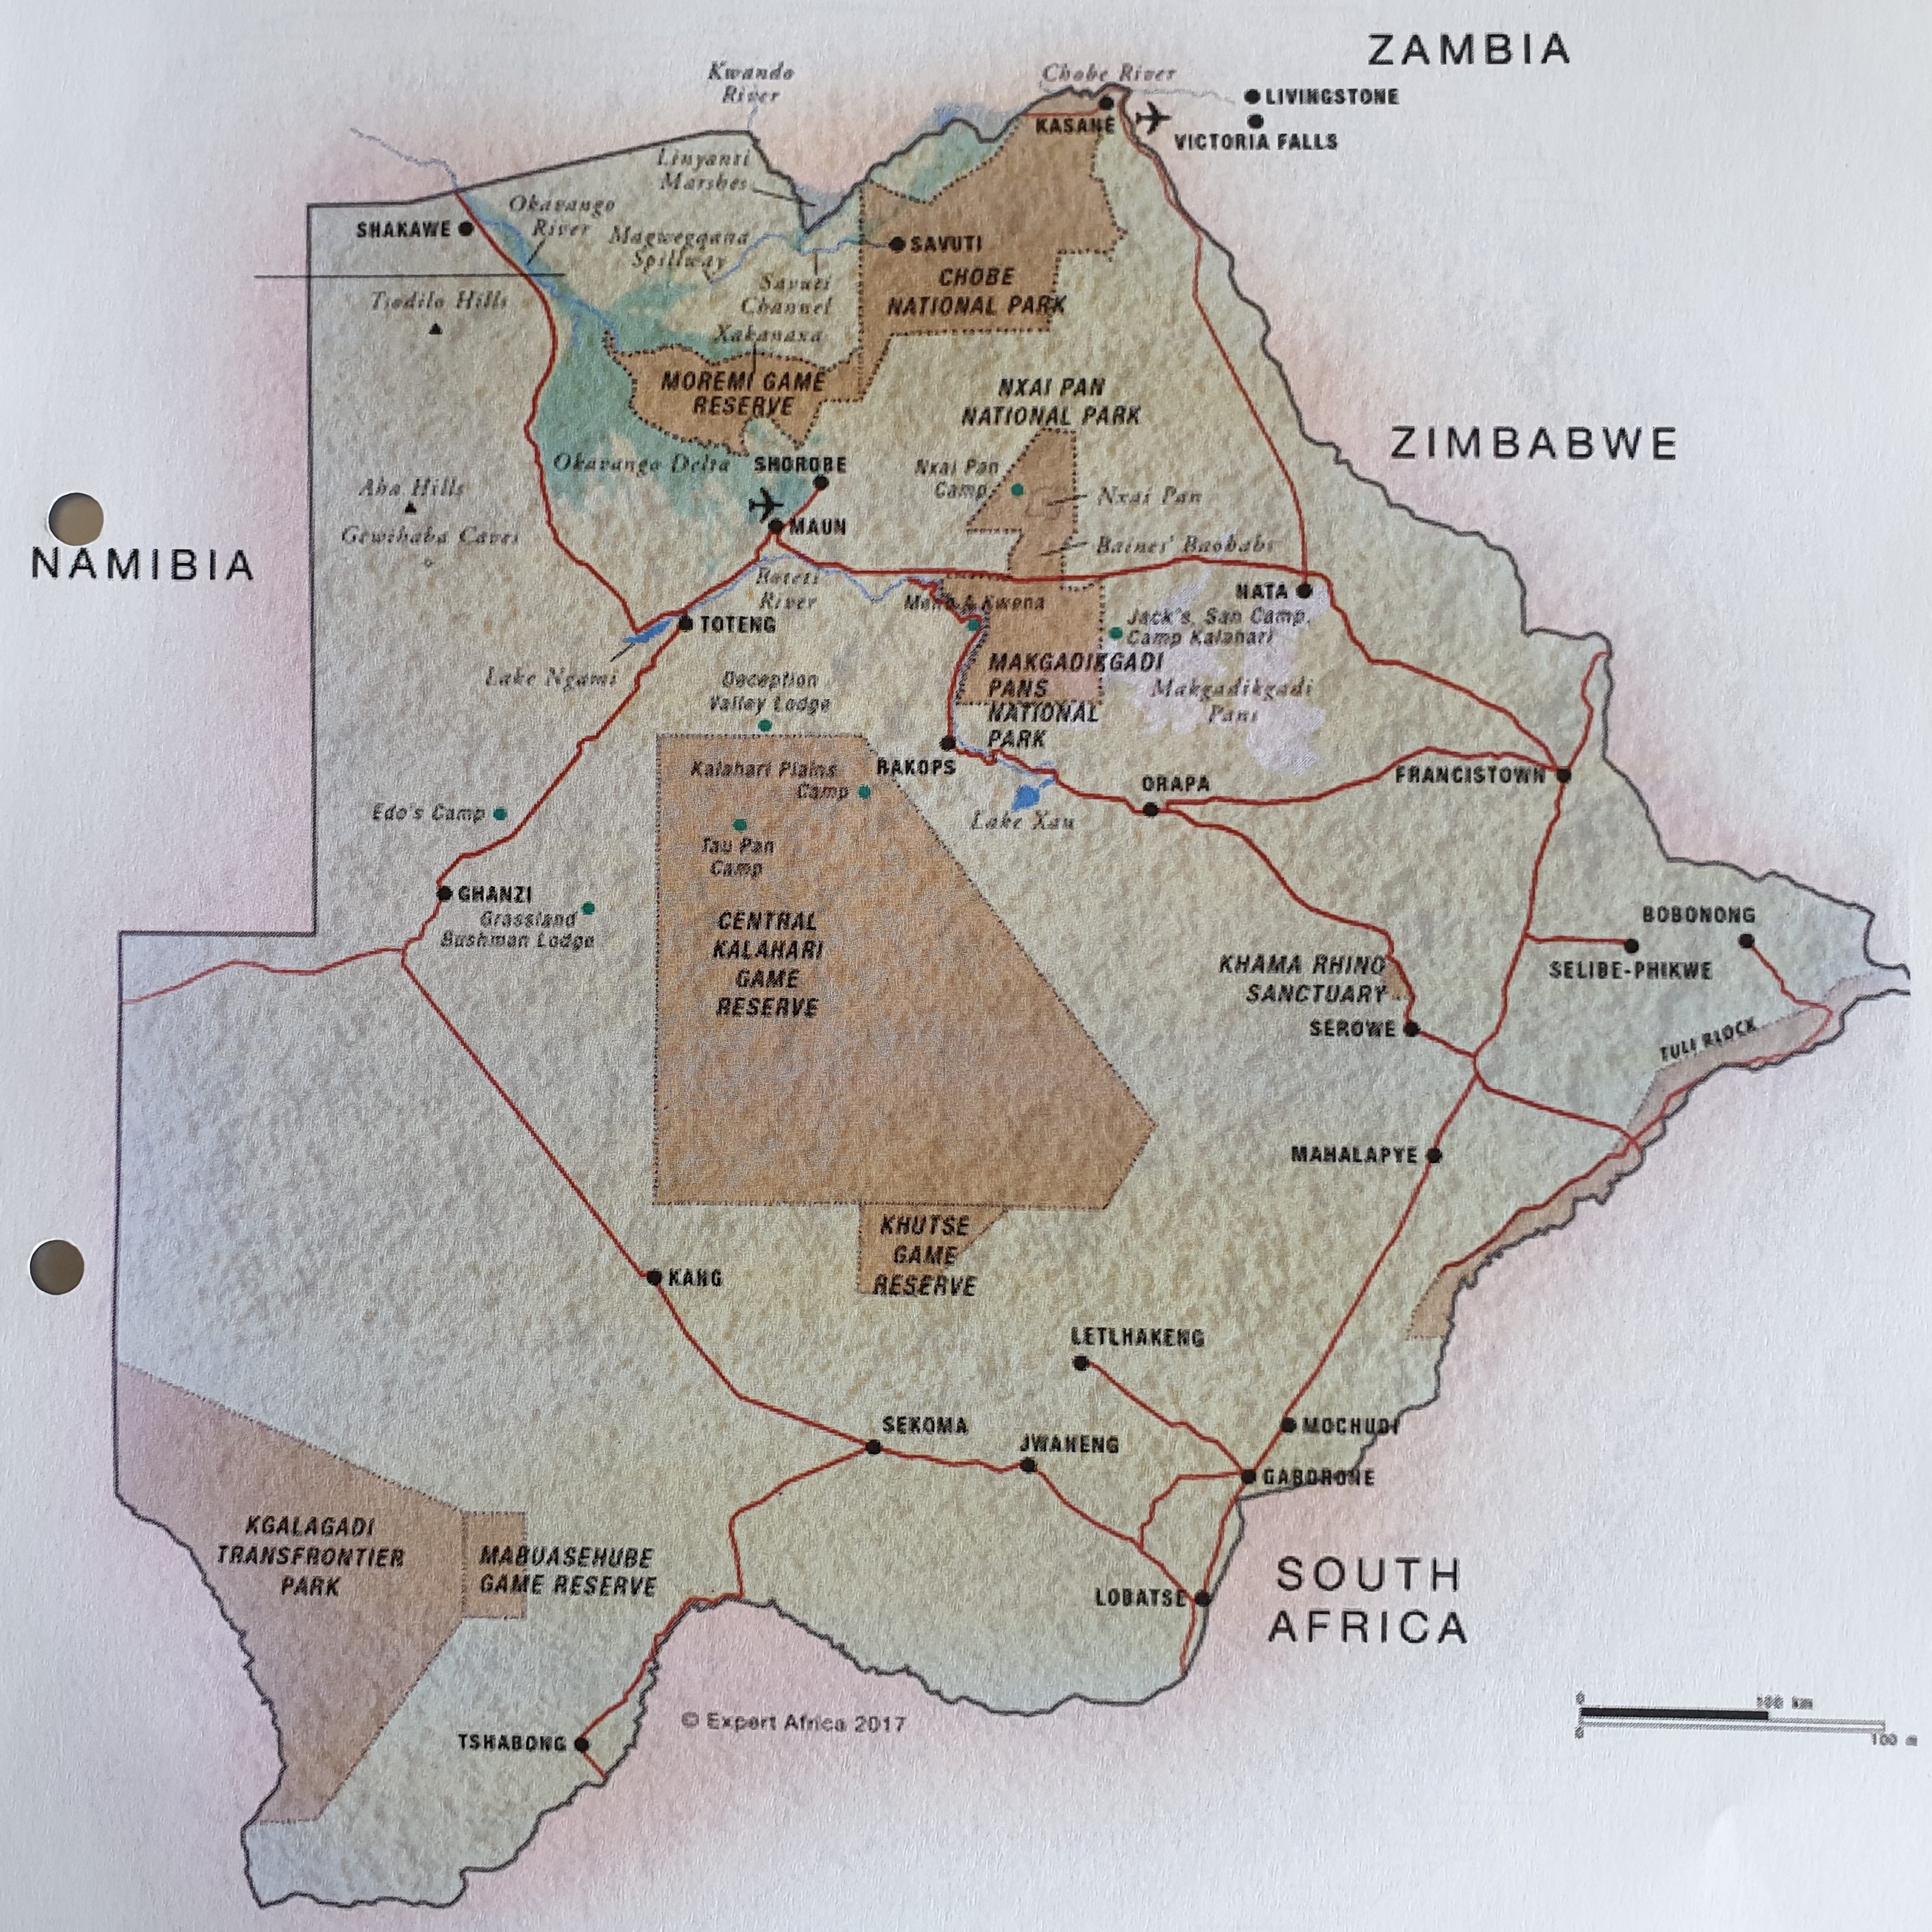 Plan d'ensemble du Botswana et de ses principales Réserves (colorées en brun).